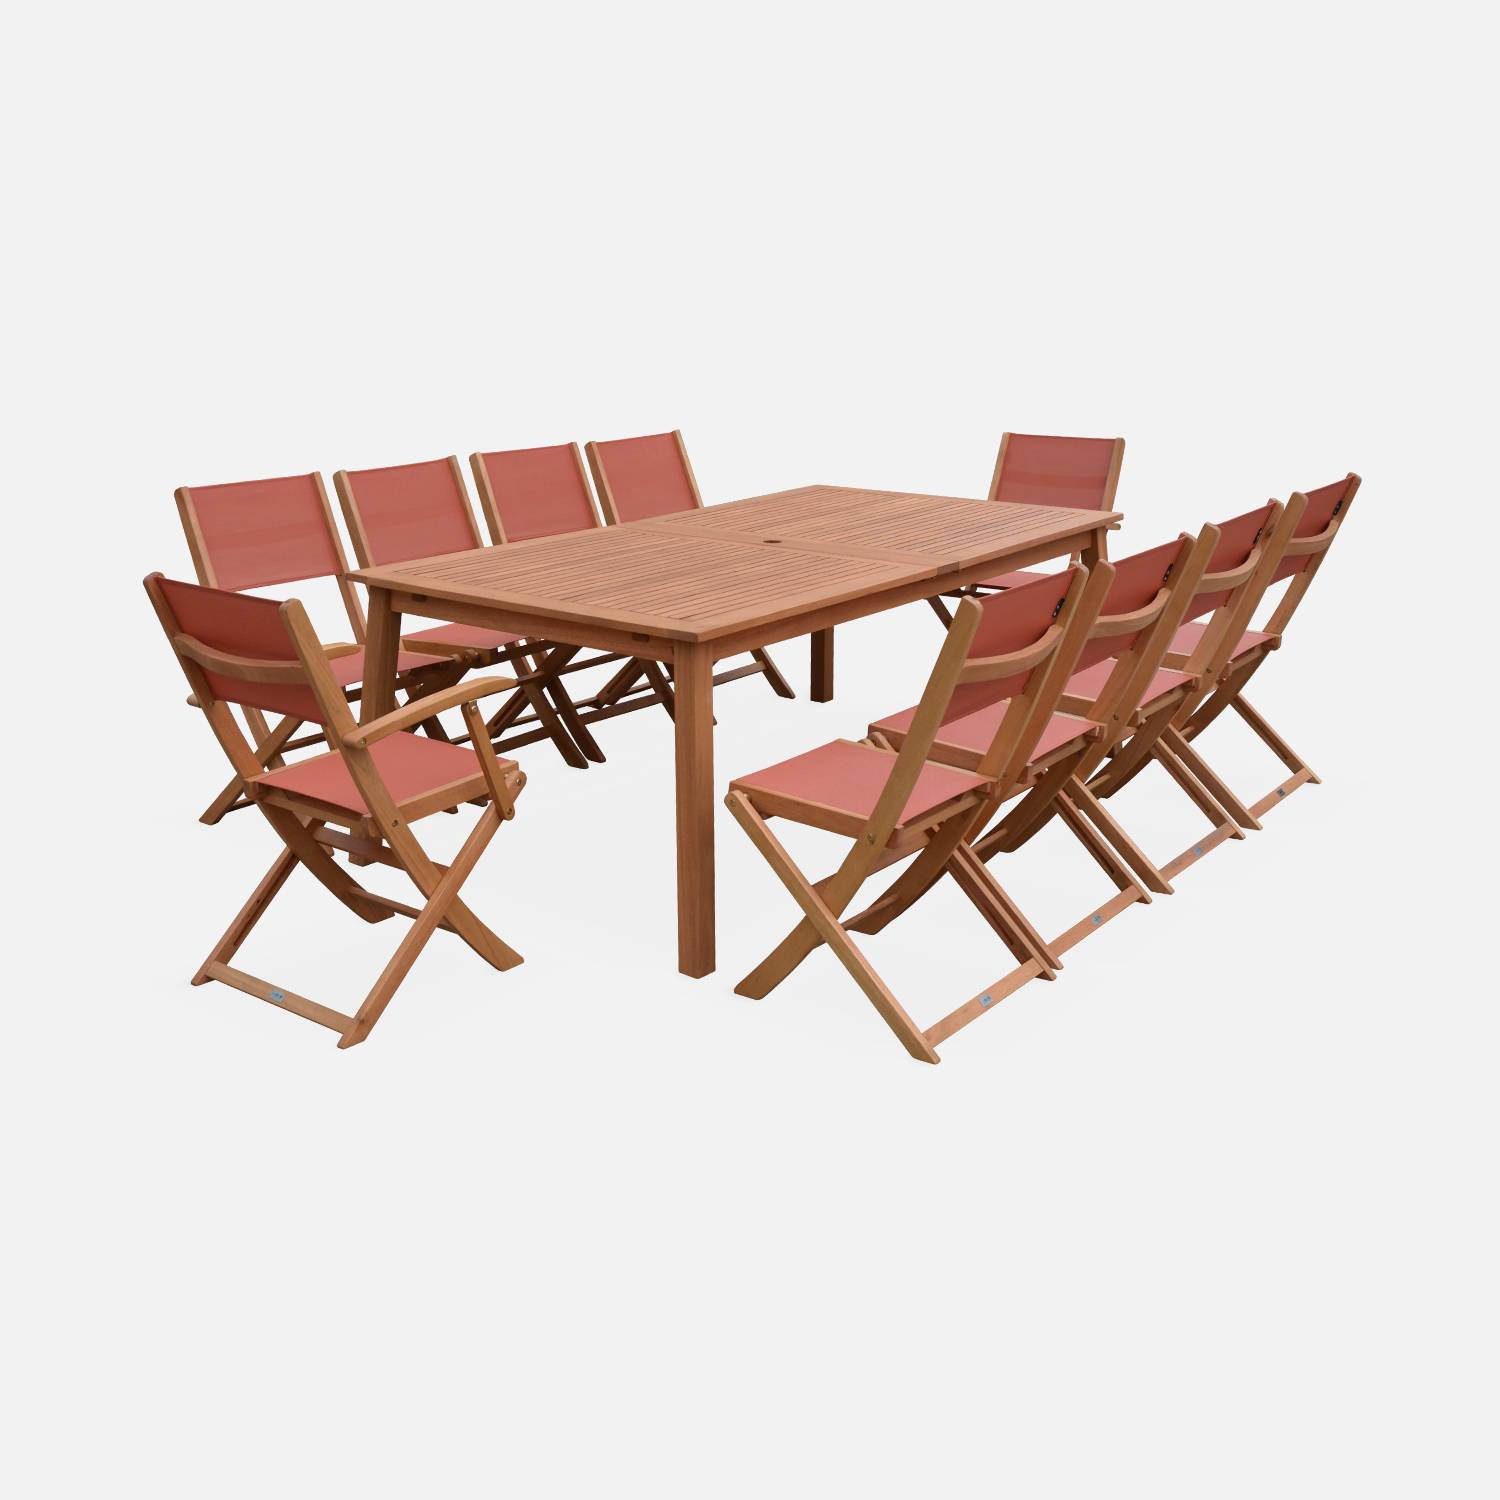 Ausziehbare Gartenmöbel aus Holz - Almeria Tisch 200/250/300cm mit 2 Verlängerungen, 2 Sesseln und 8 Stühlen, aus geöltem FSC Eukalyptusholz und Terra-Cotta Textilene Photo3